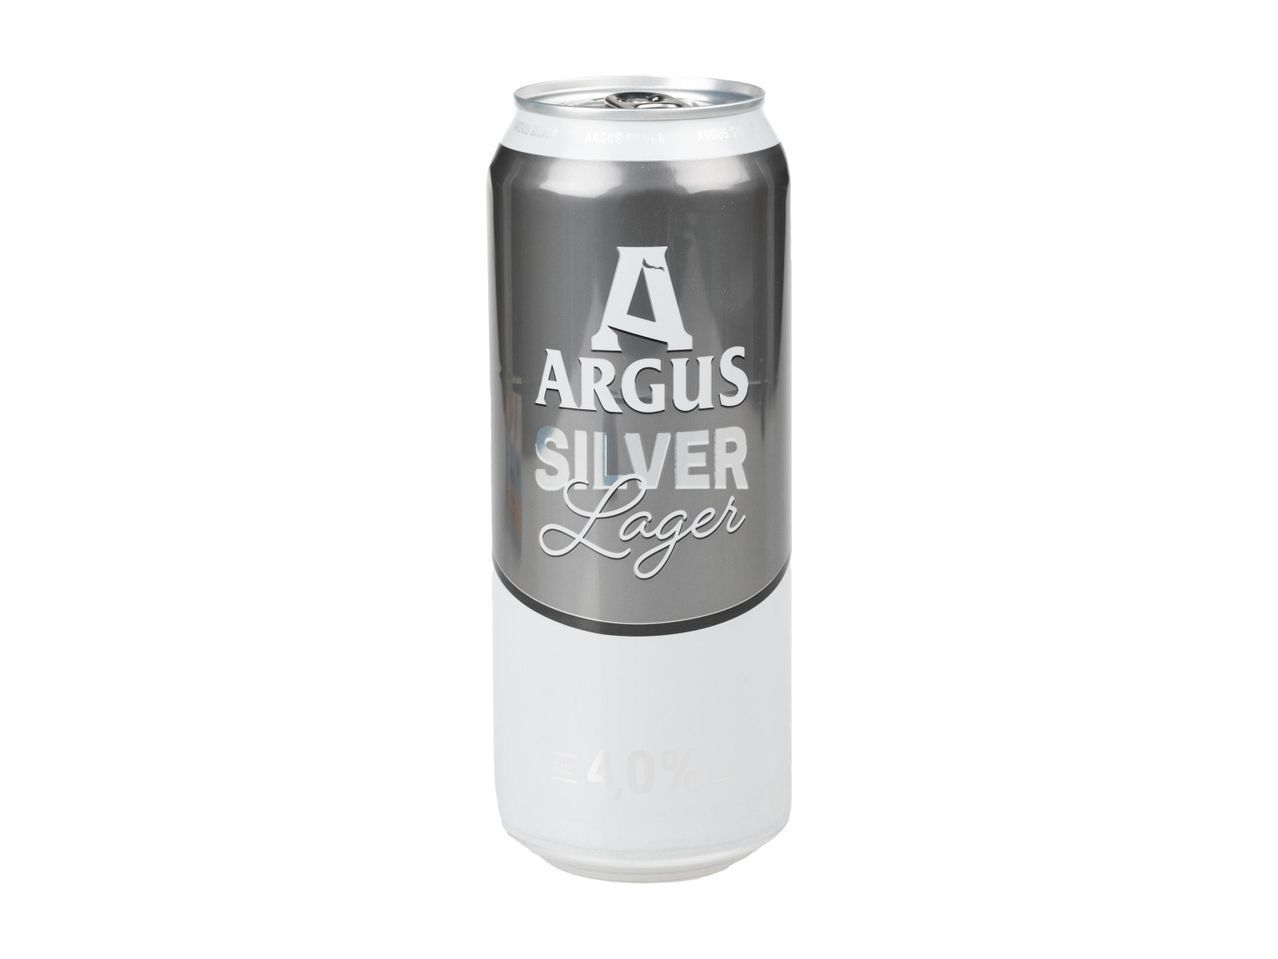 Accesați vizualizarea pe ecran complet: Argus Silver - bere blondă, alc. 4,0% vol. - Imagine 1